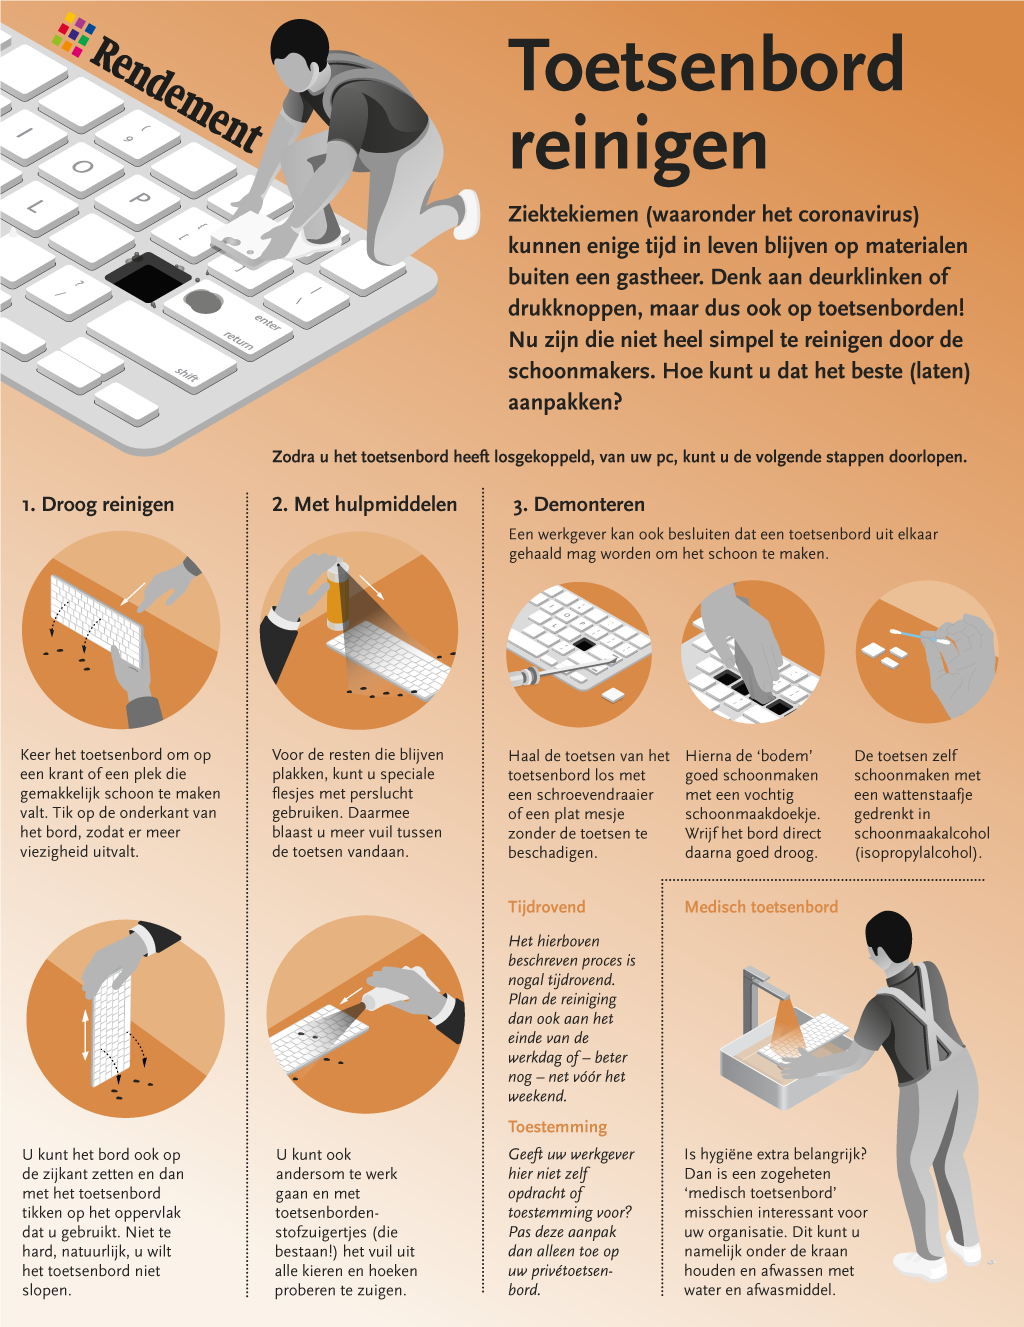 Hoe zorgt u dat toetsenborden hygiënisch blijven? Leer het met behulp van deze infographic.